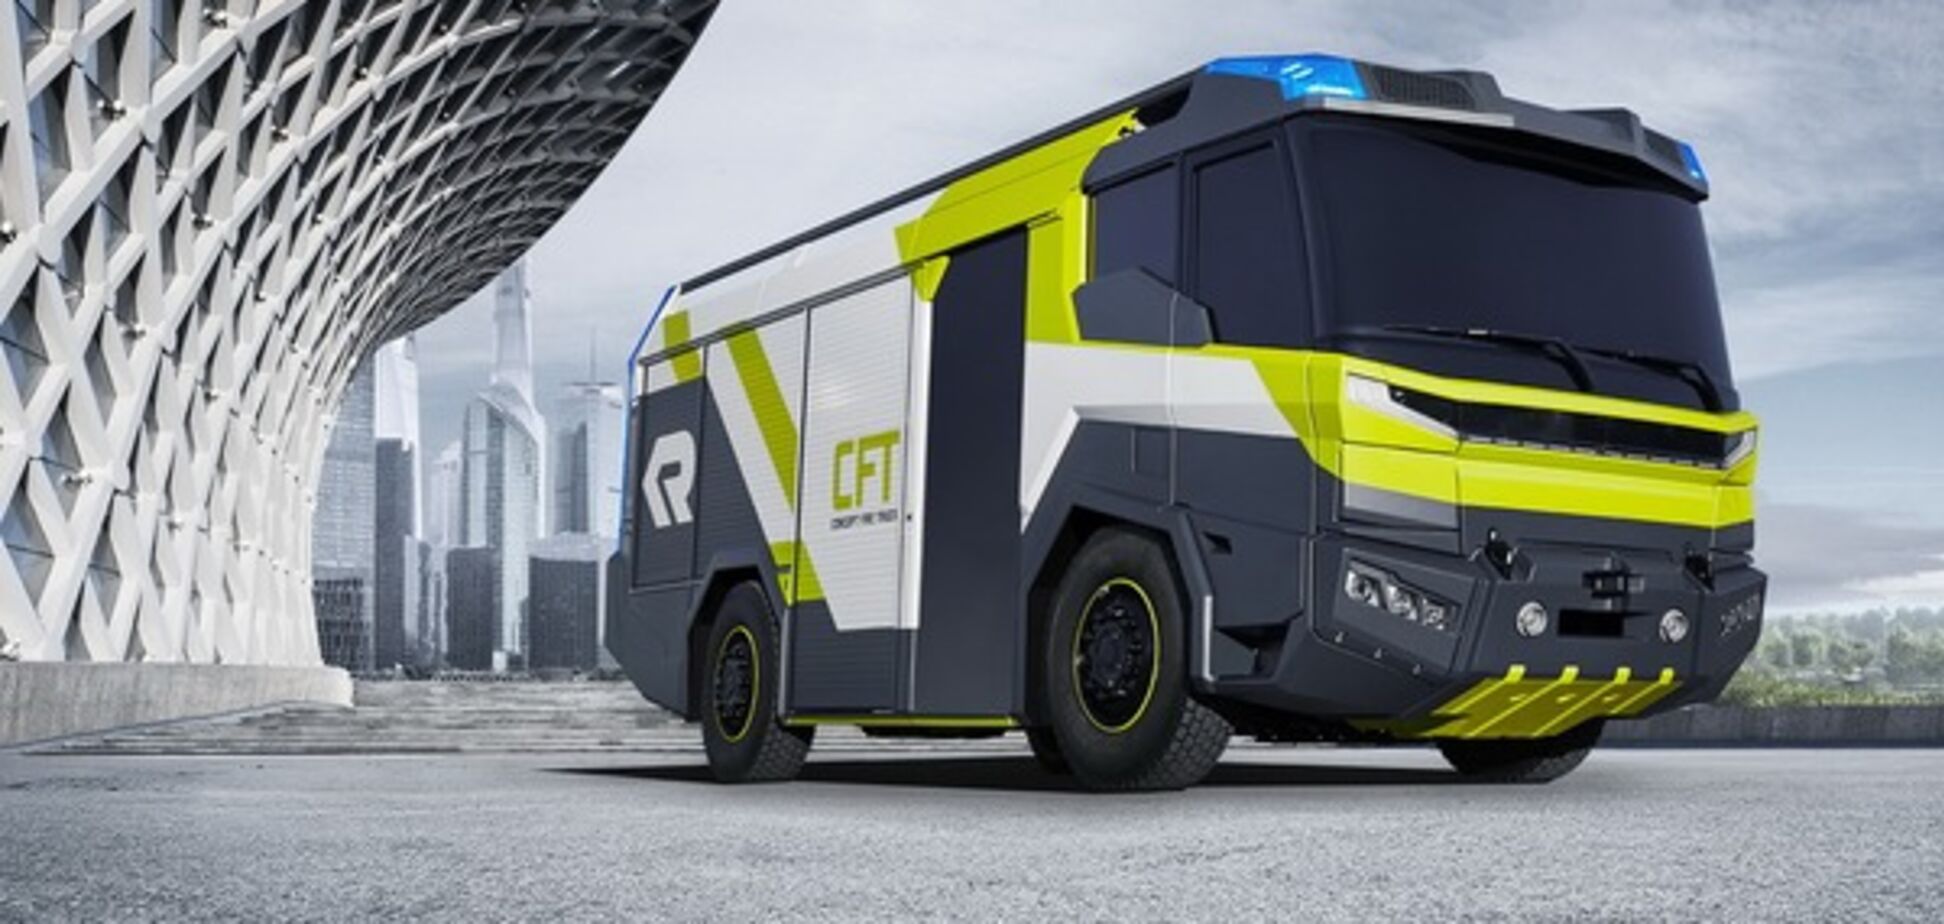 Rosenbaurer Concept Fire Truck